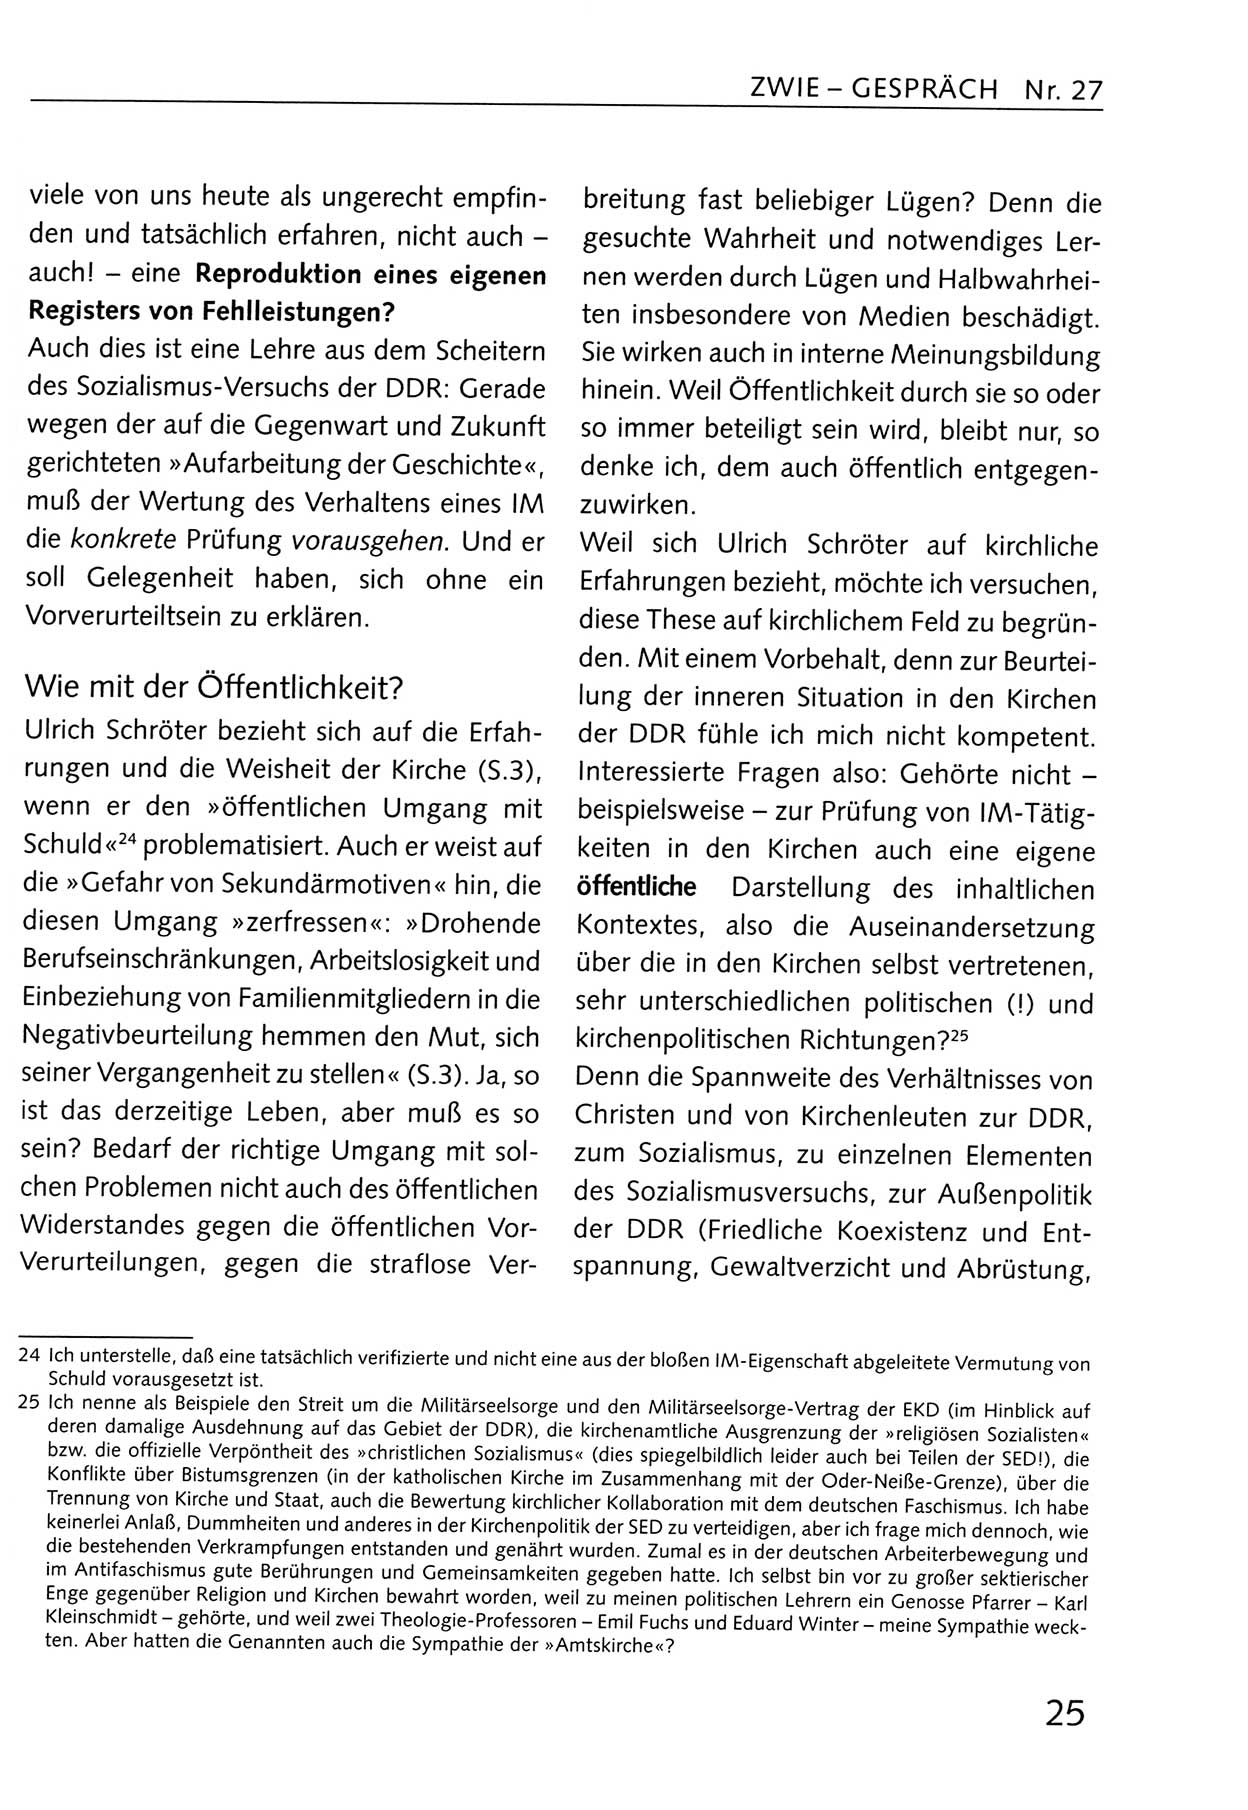 Zwie-Gespräch, Beiträge zum Umgang mit der Staatssicherheits-Vergangenheit [Deutsche Demokratische Republik (DDR)], Ausgabe Nr. 27, Berlin 1995, Seite 25 (Zwie-Gespr. Ausg. 27 1995, S. 25)